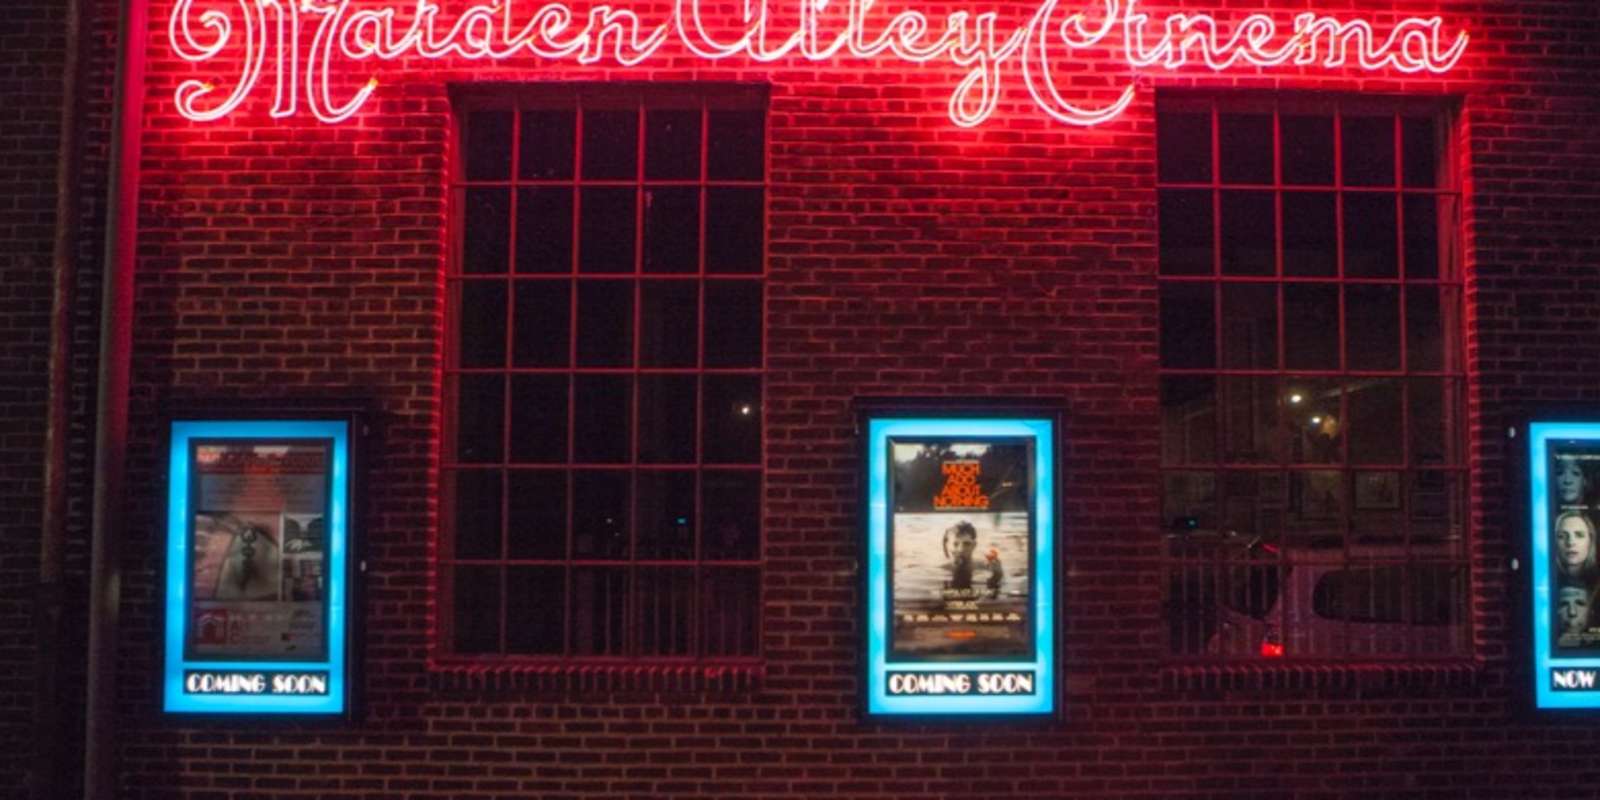 Maiden Alley Cinema